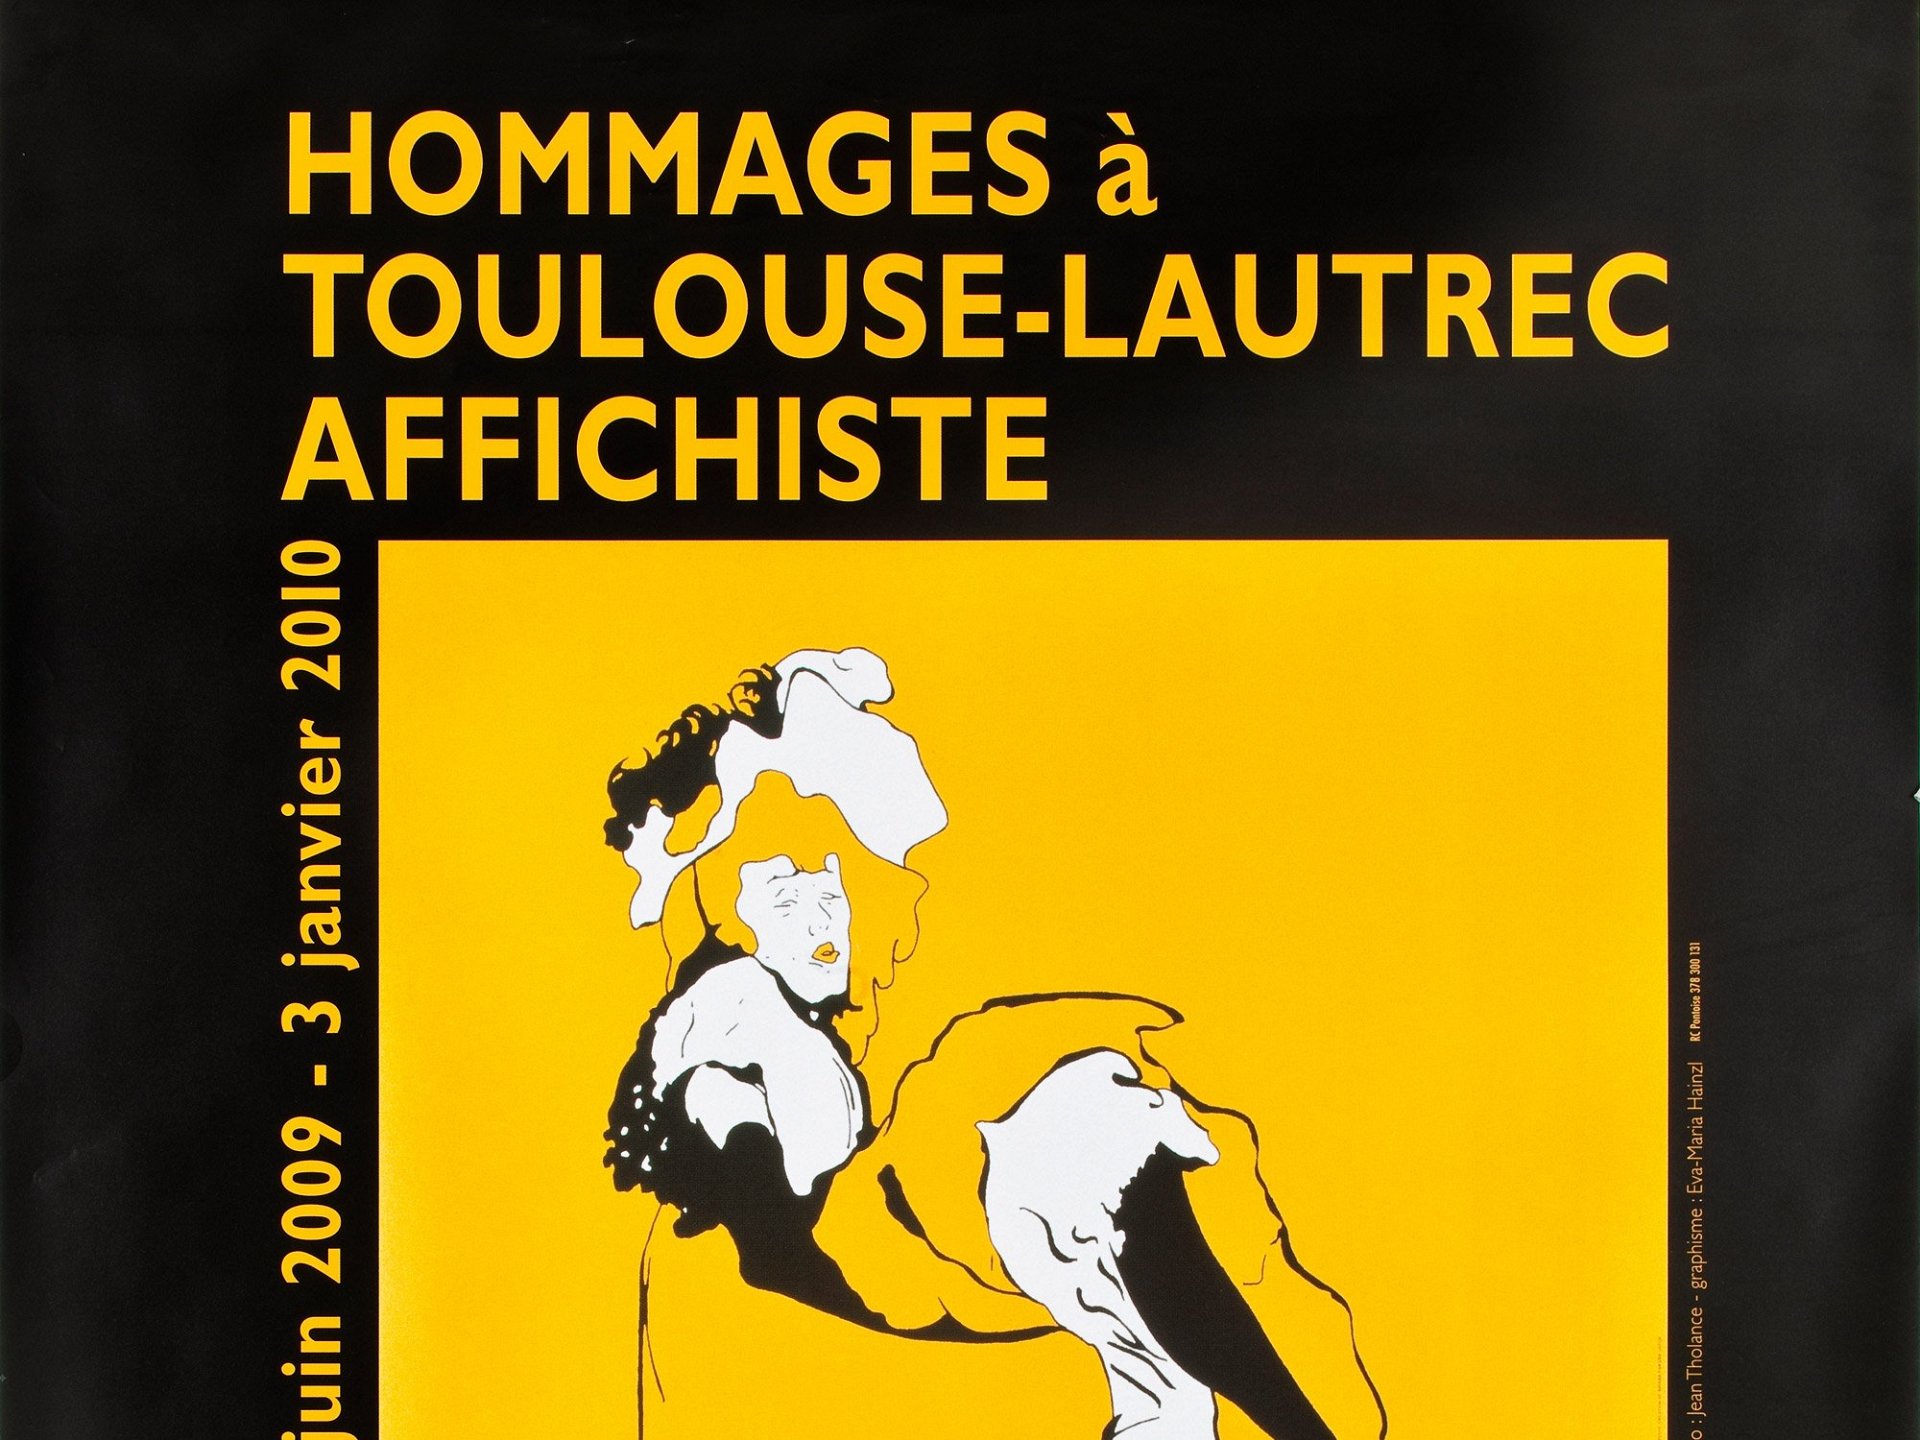 Hommages à Toulouse-Lautrec affichiste